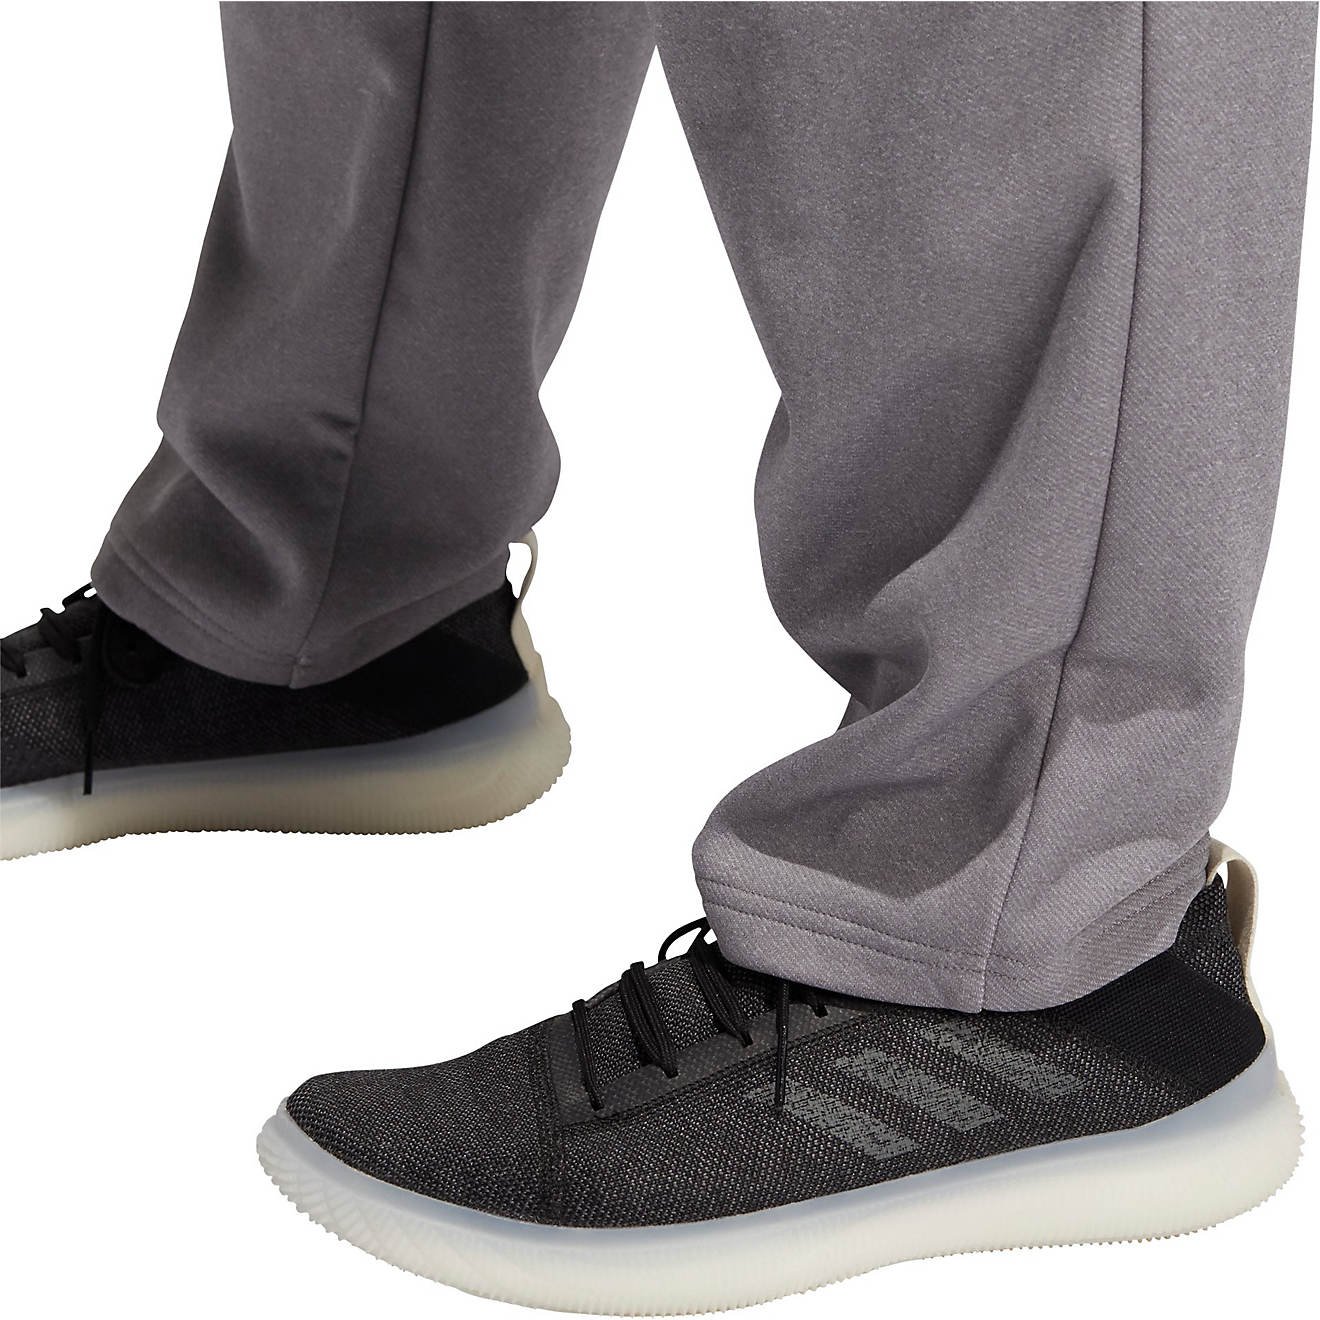 Quần Dài Chính Hãng - Adidas Men's Team Issue Pants ''Grey''- GN4707